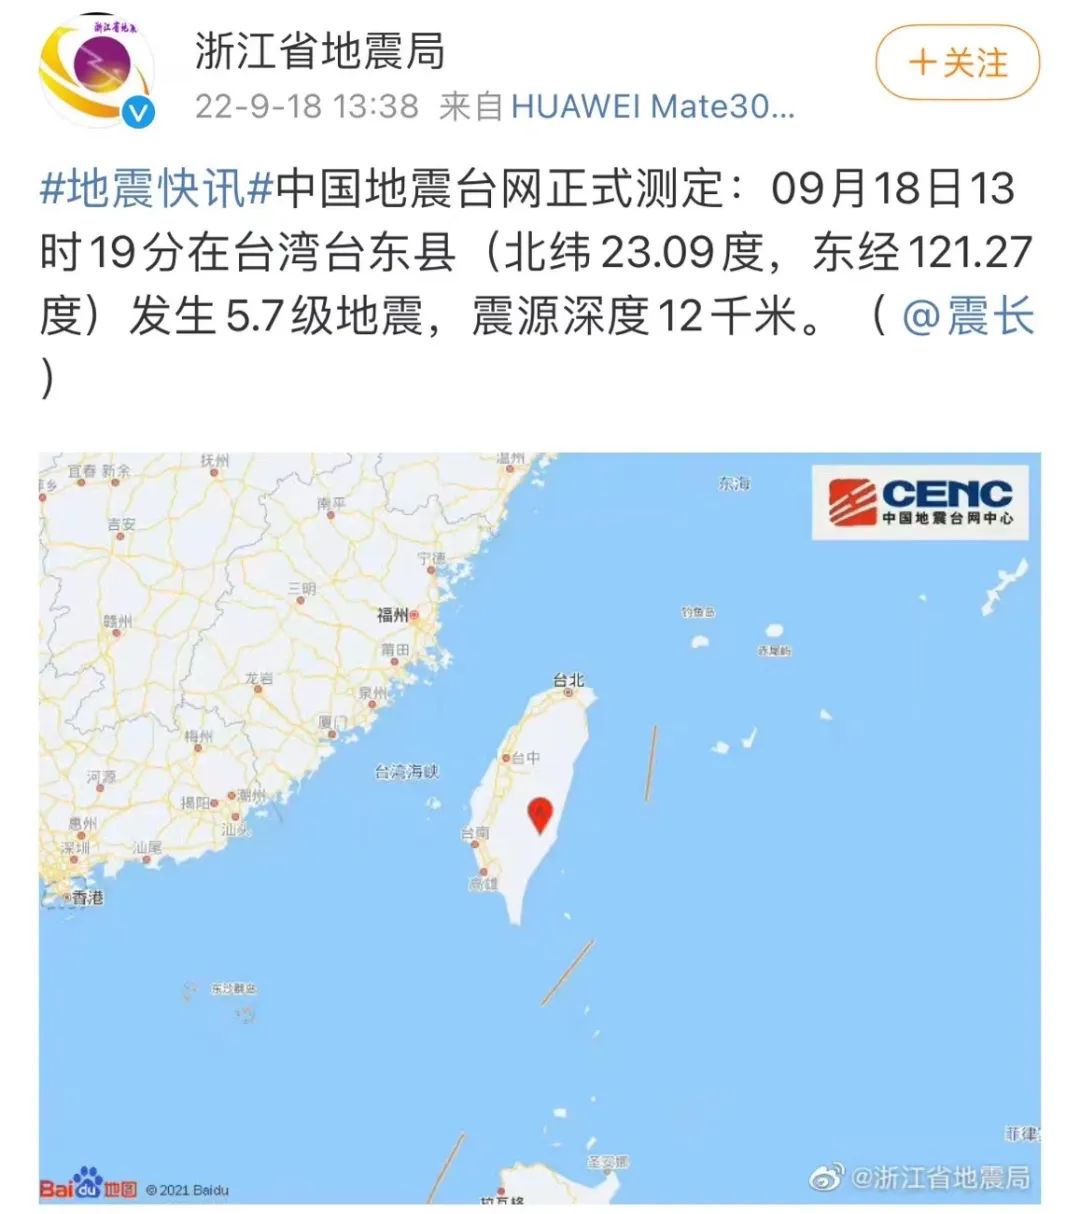 台湾花莲县海域发生5.2级地震 多地网友反应有震感